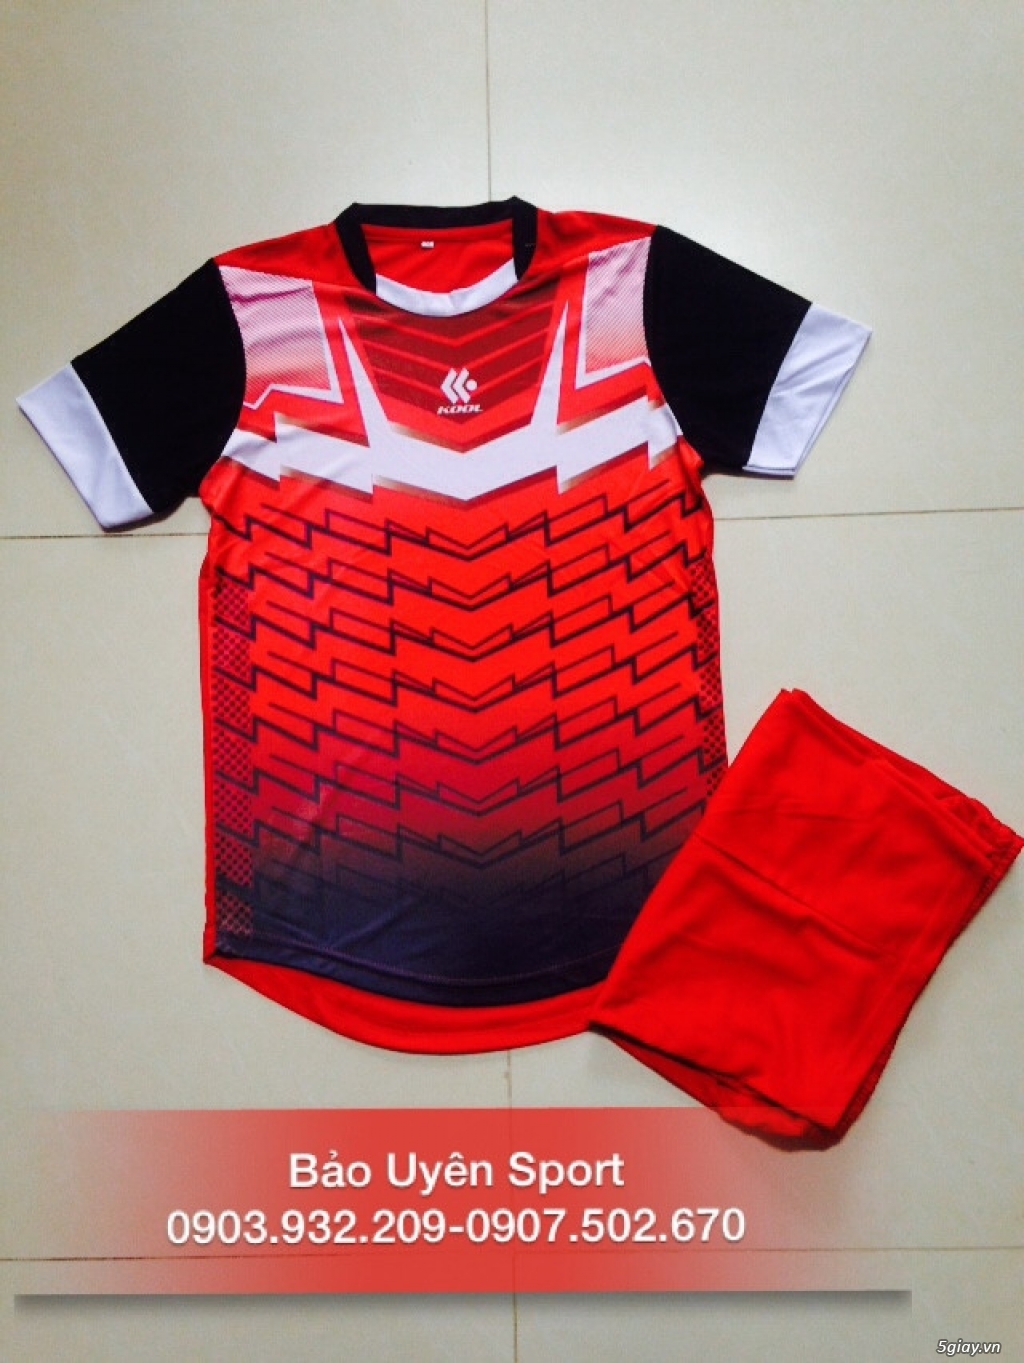 BẢO UYÊN SPORT - Chuyên cung cấp quần áo bóng đá với giá cạnh tranh kèm nhiều ưu đãi